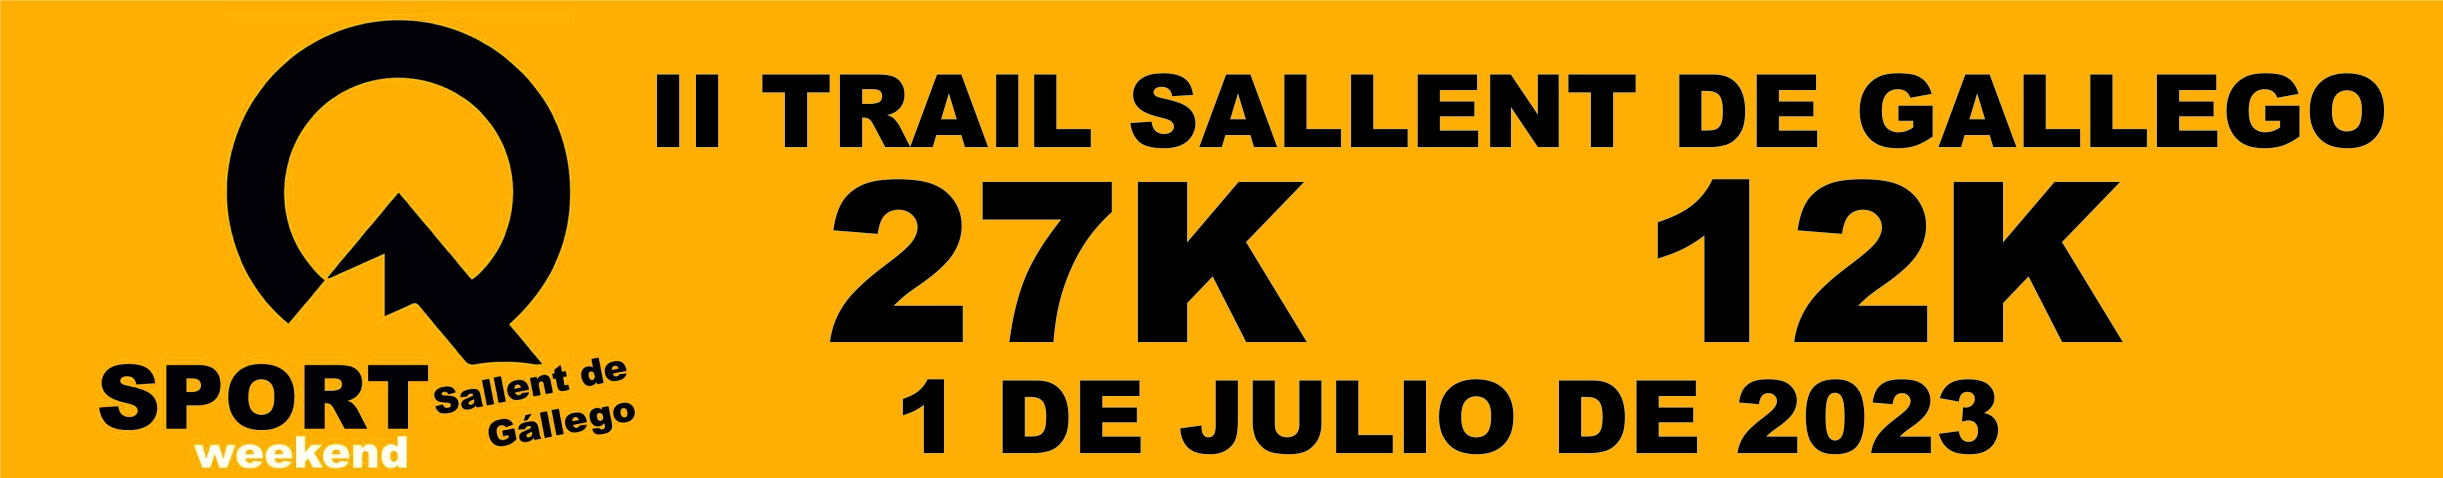 II TRAIL SALLENT DE GALLEGO